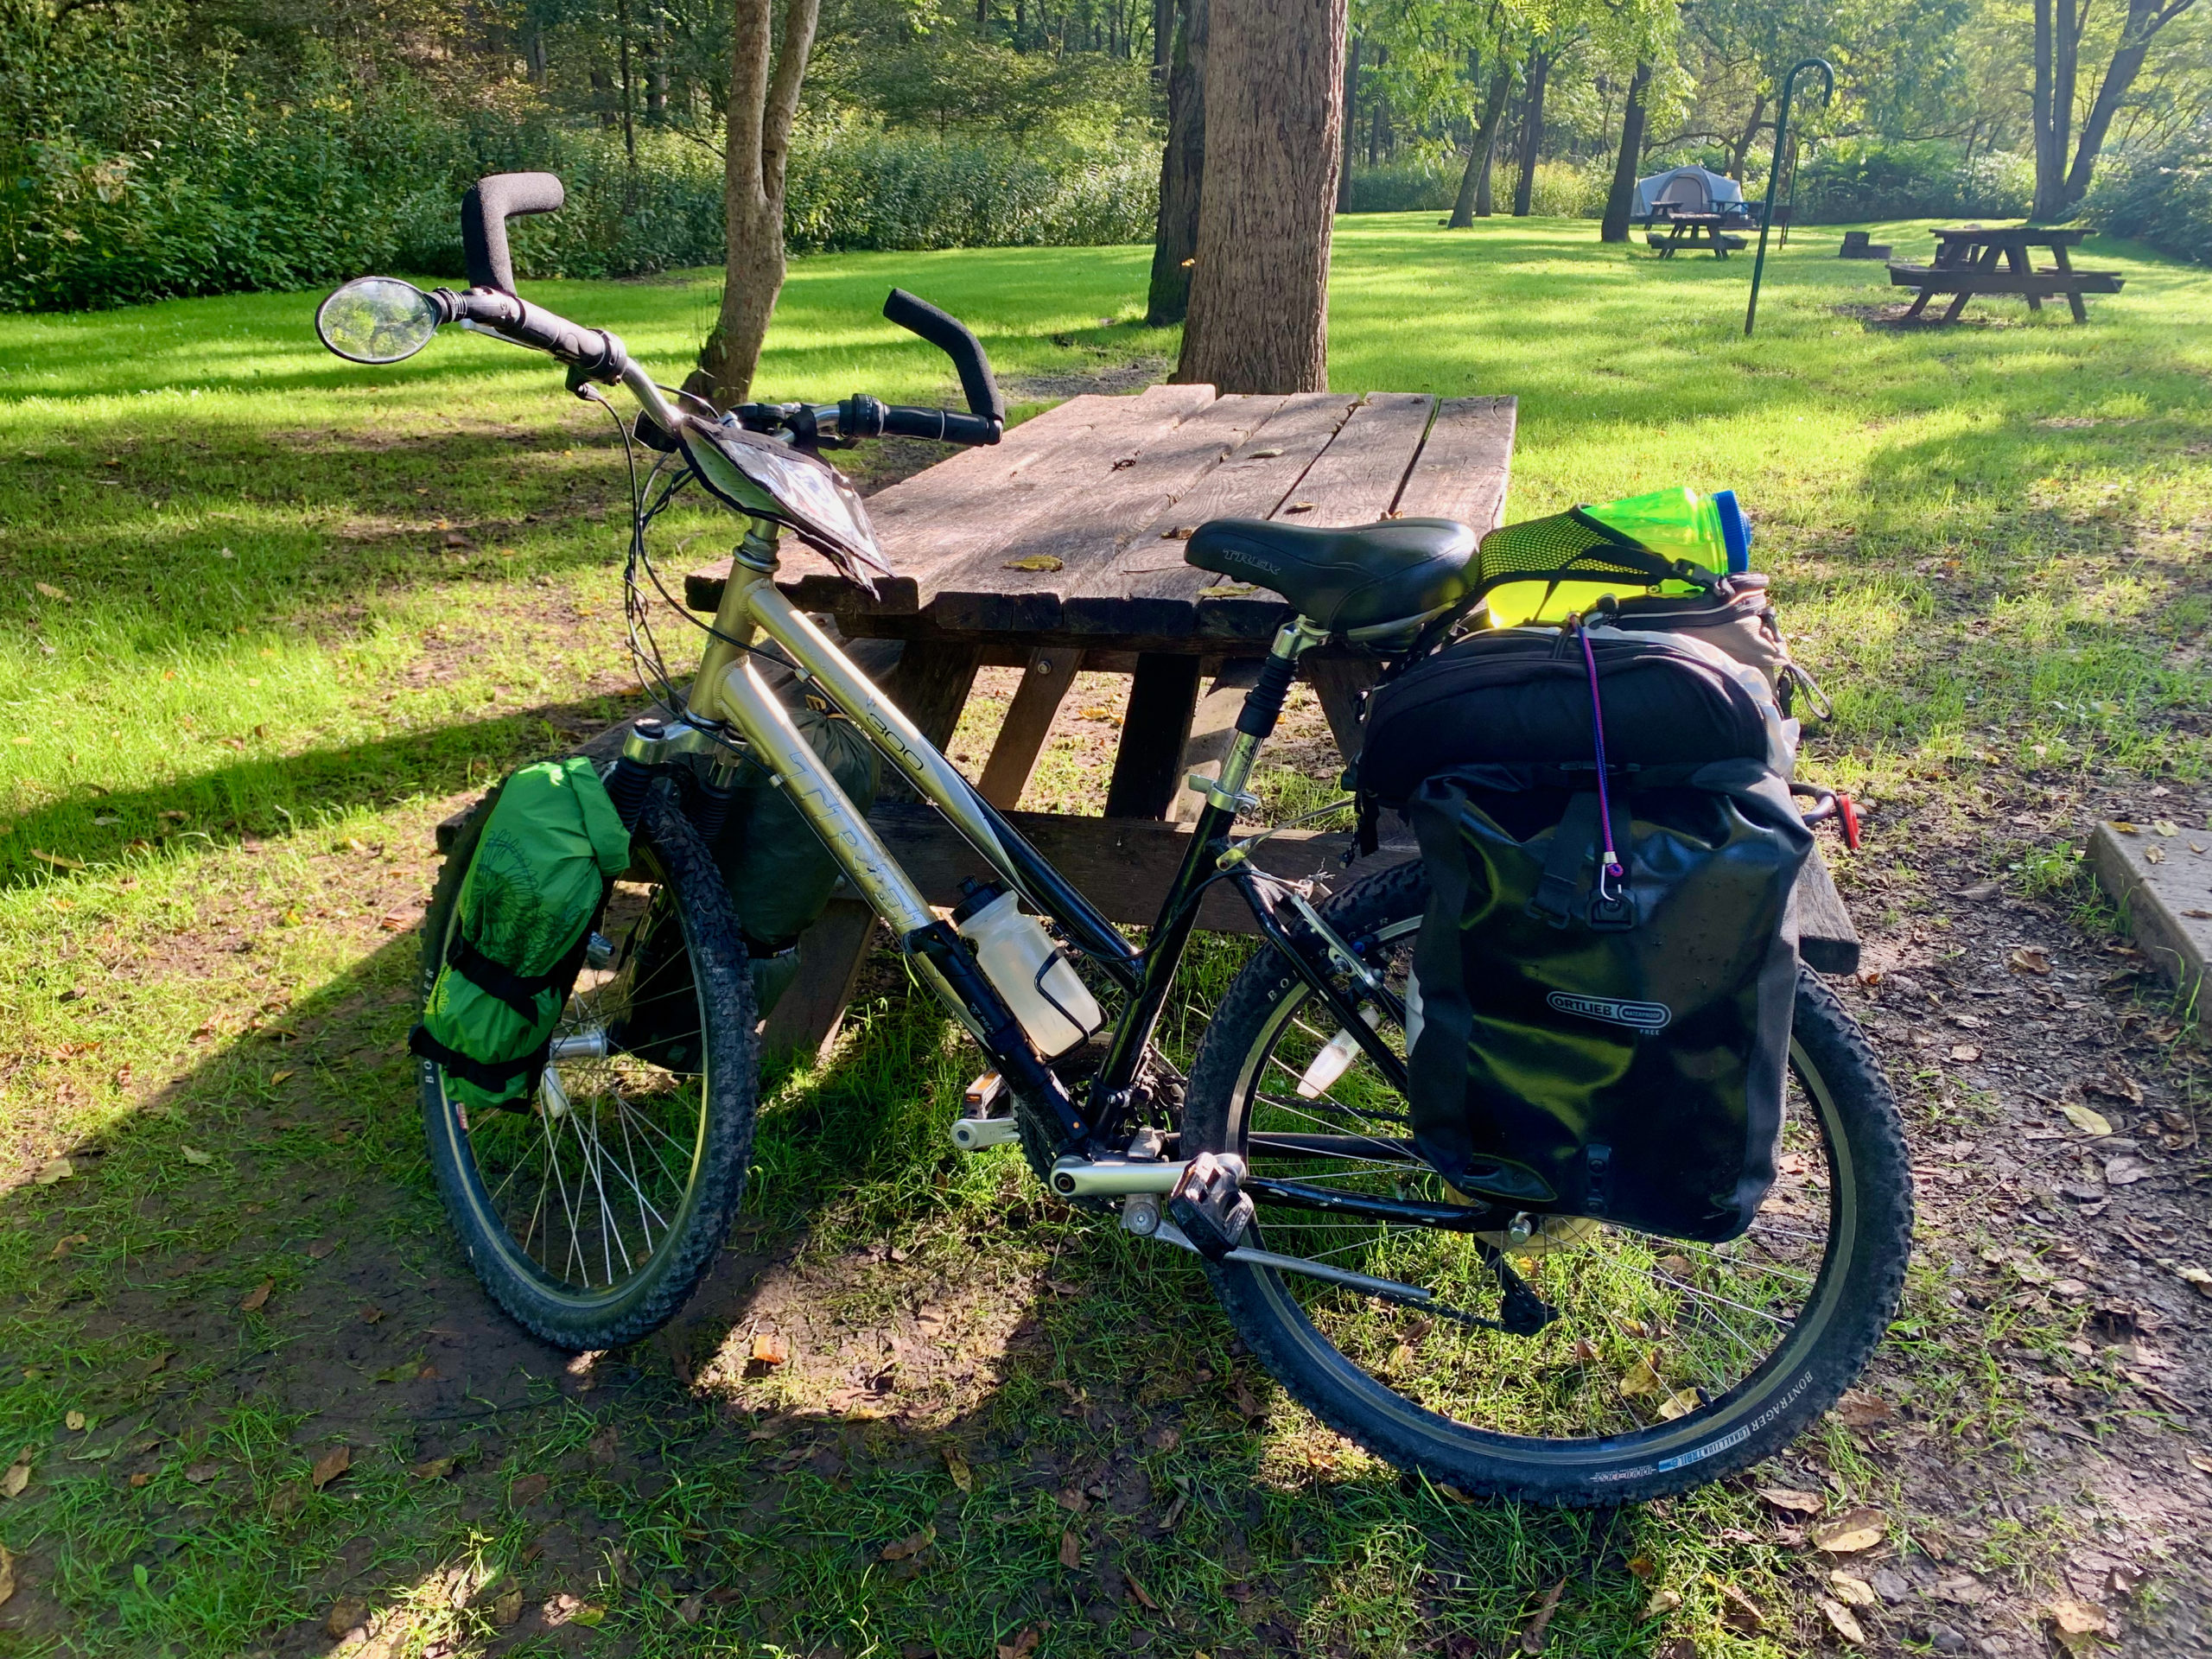 Bike-packing the Pine Creek Rail Trail